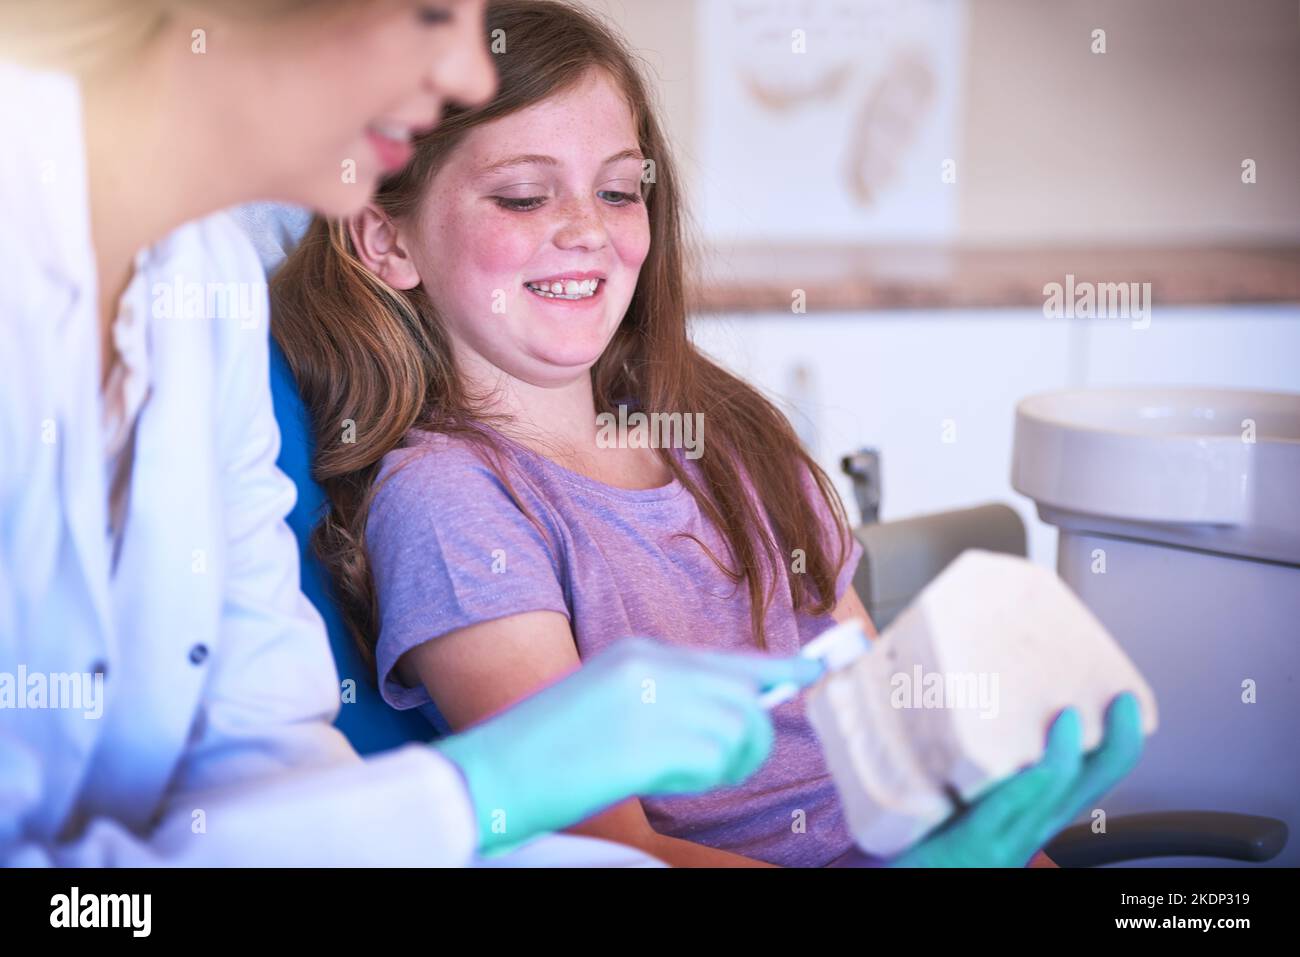 Non è mai troppo presto per iniziare a prendersi cura dei denti. Una dentista femminile che insegna alla sua giovane paziente come lavarsi i denti. Foto Stock